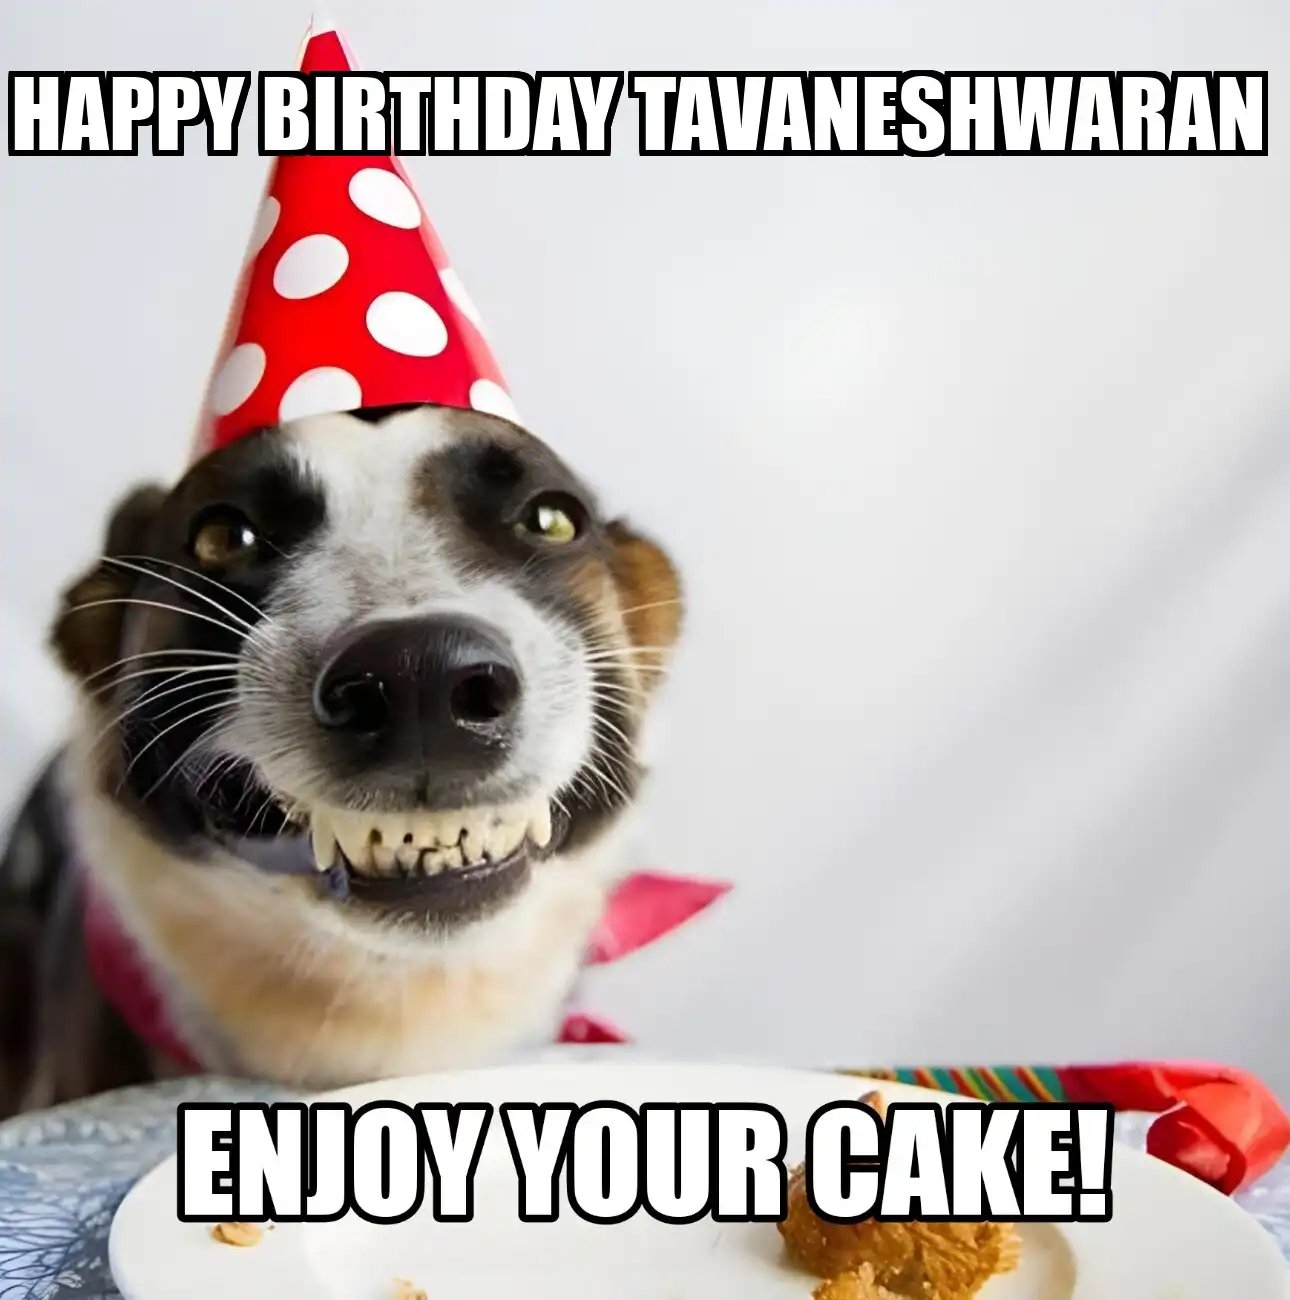 Happy Birthday Tavaneshwaran Enjoy Your Cake Dog Meme